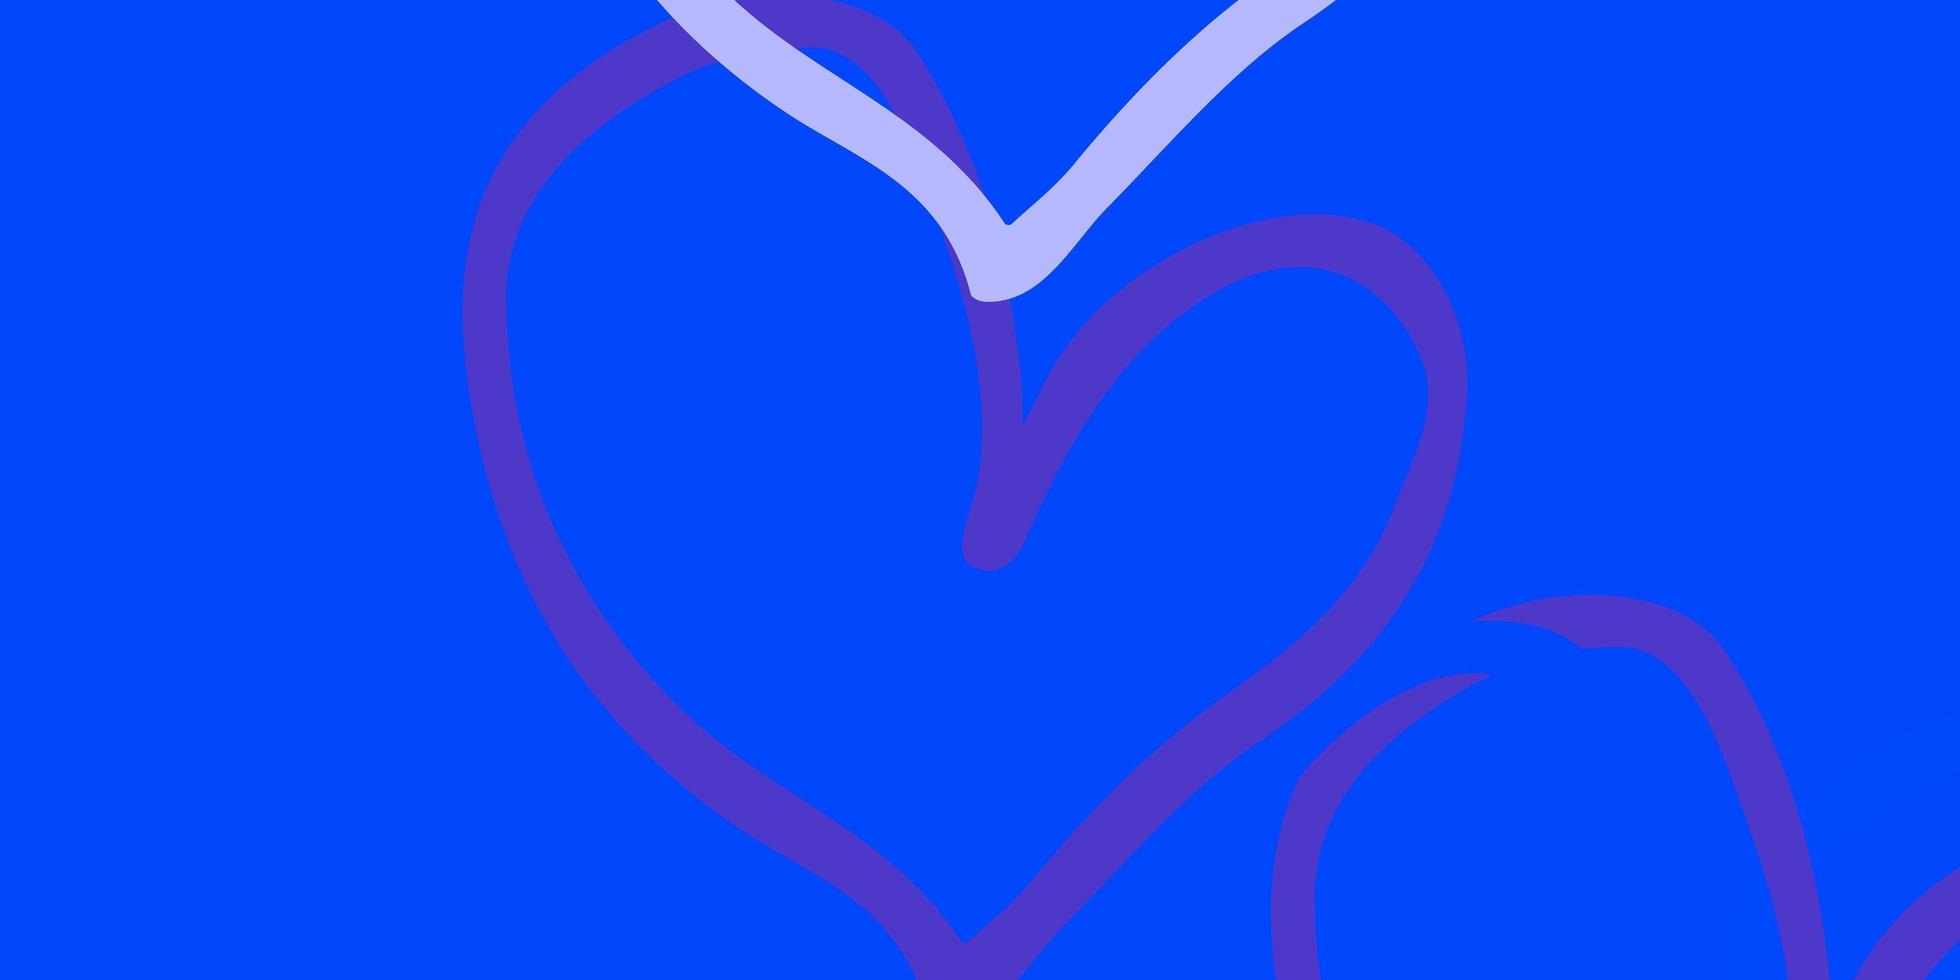 plantilla de vector azul claro con corazones de doodle.